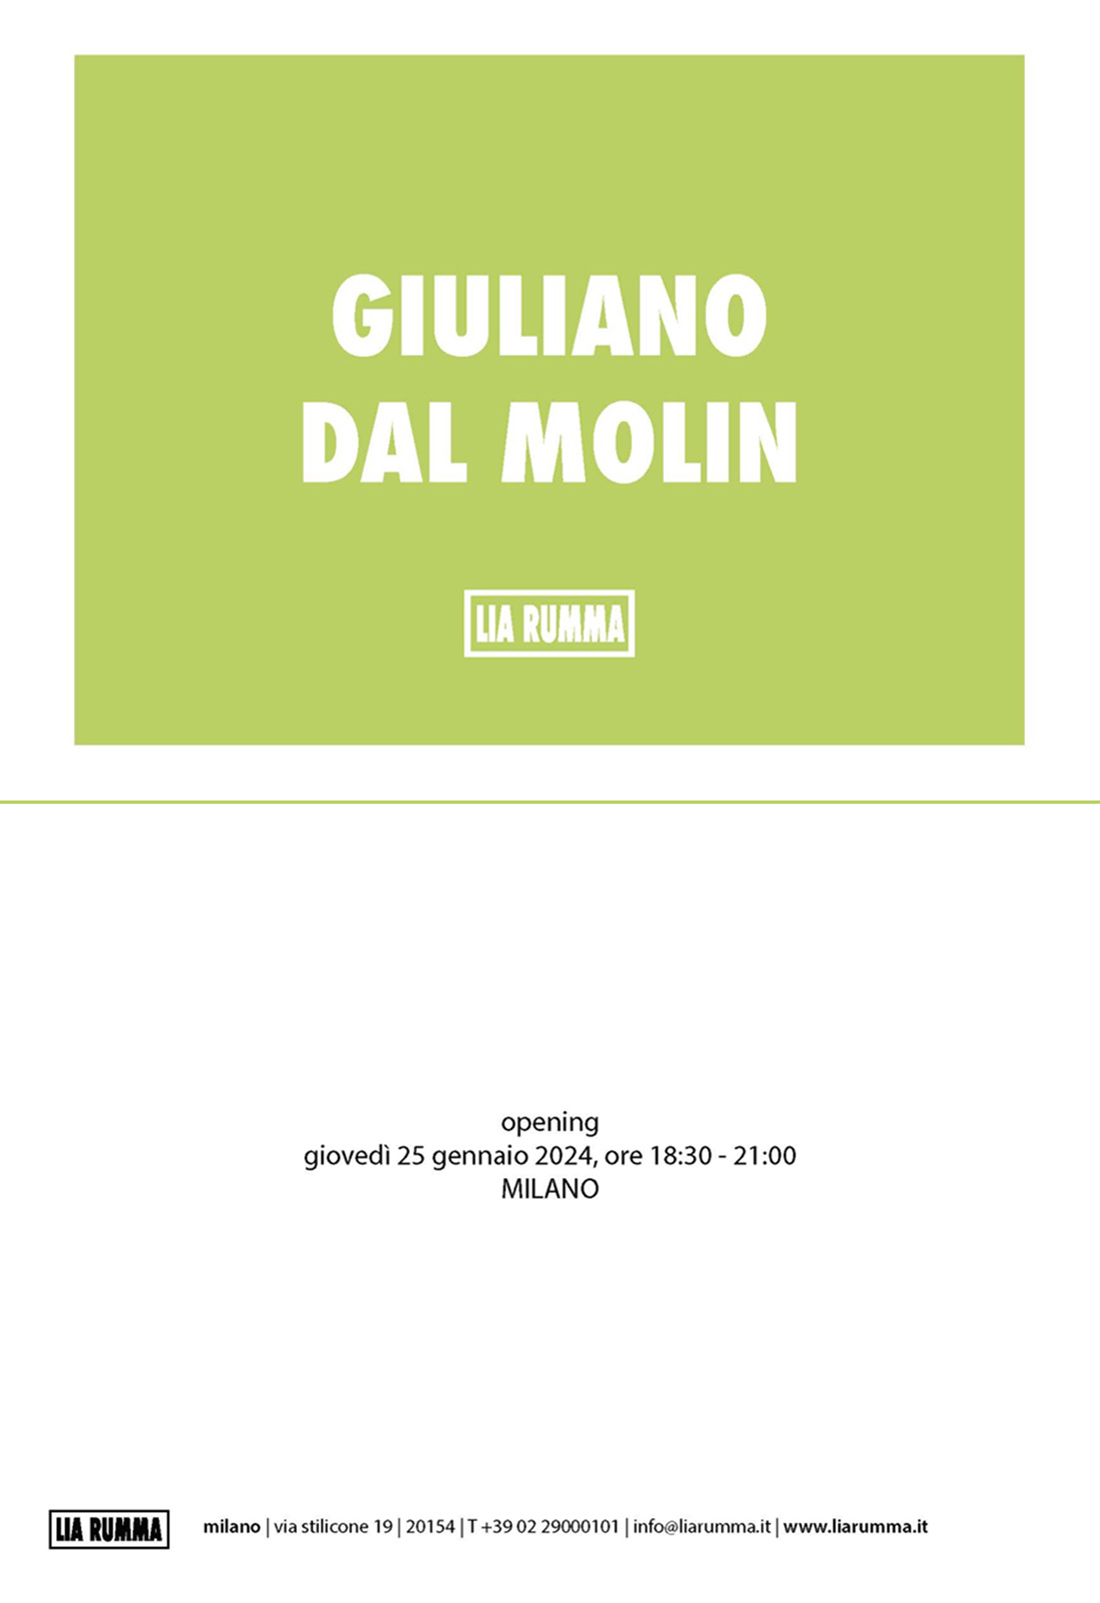 Giuliano Dal Molin, Lia Rumma Gallery- Milano